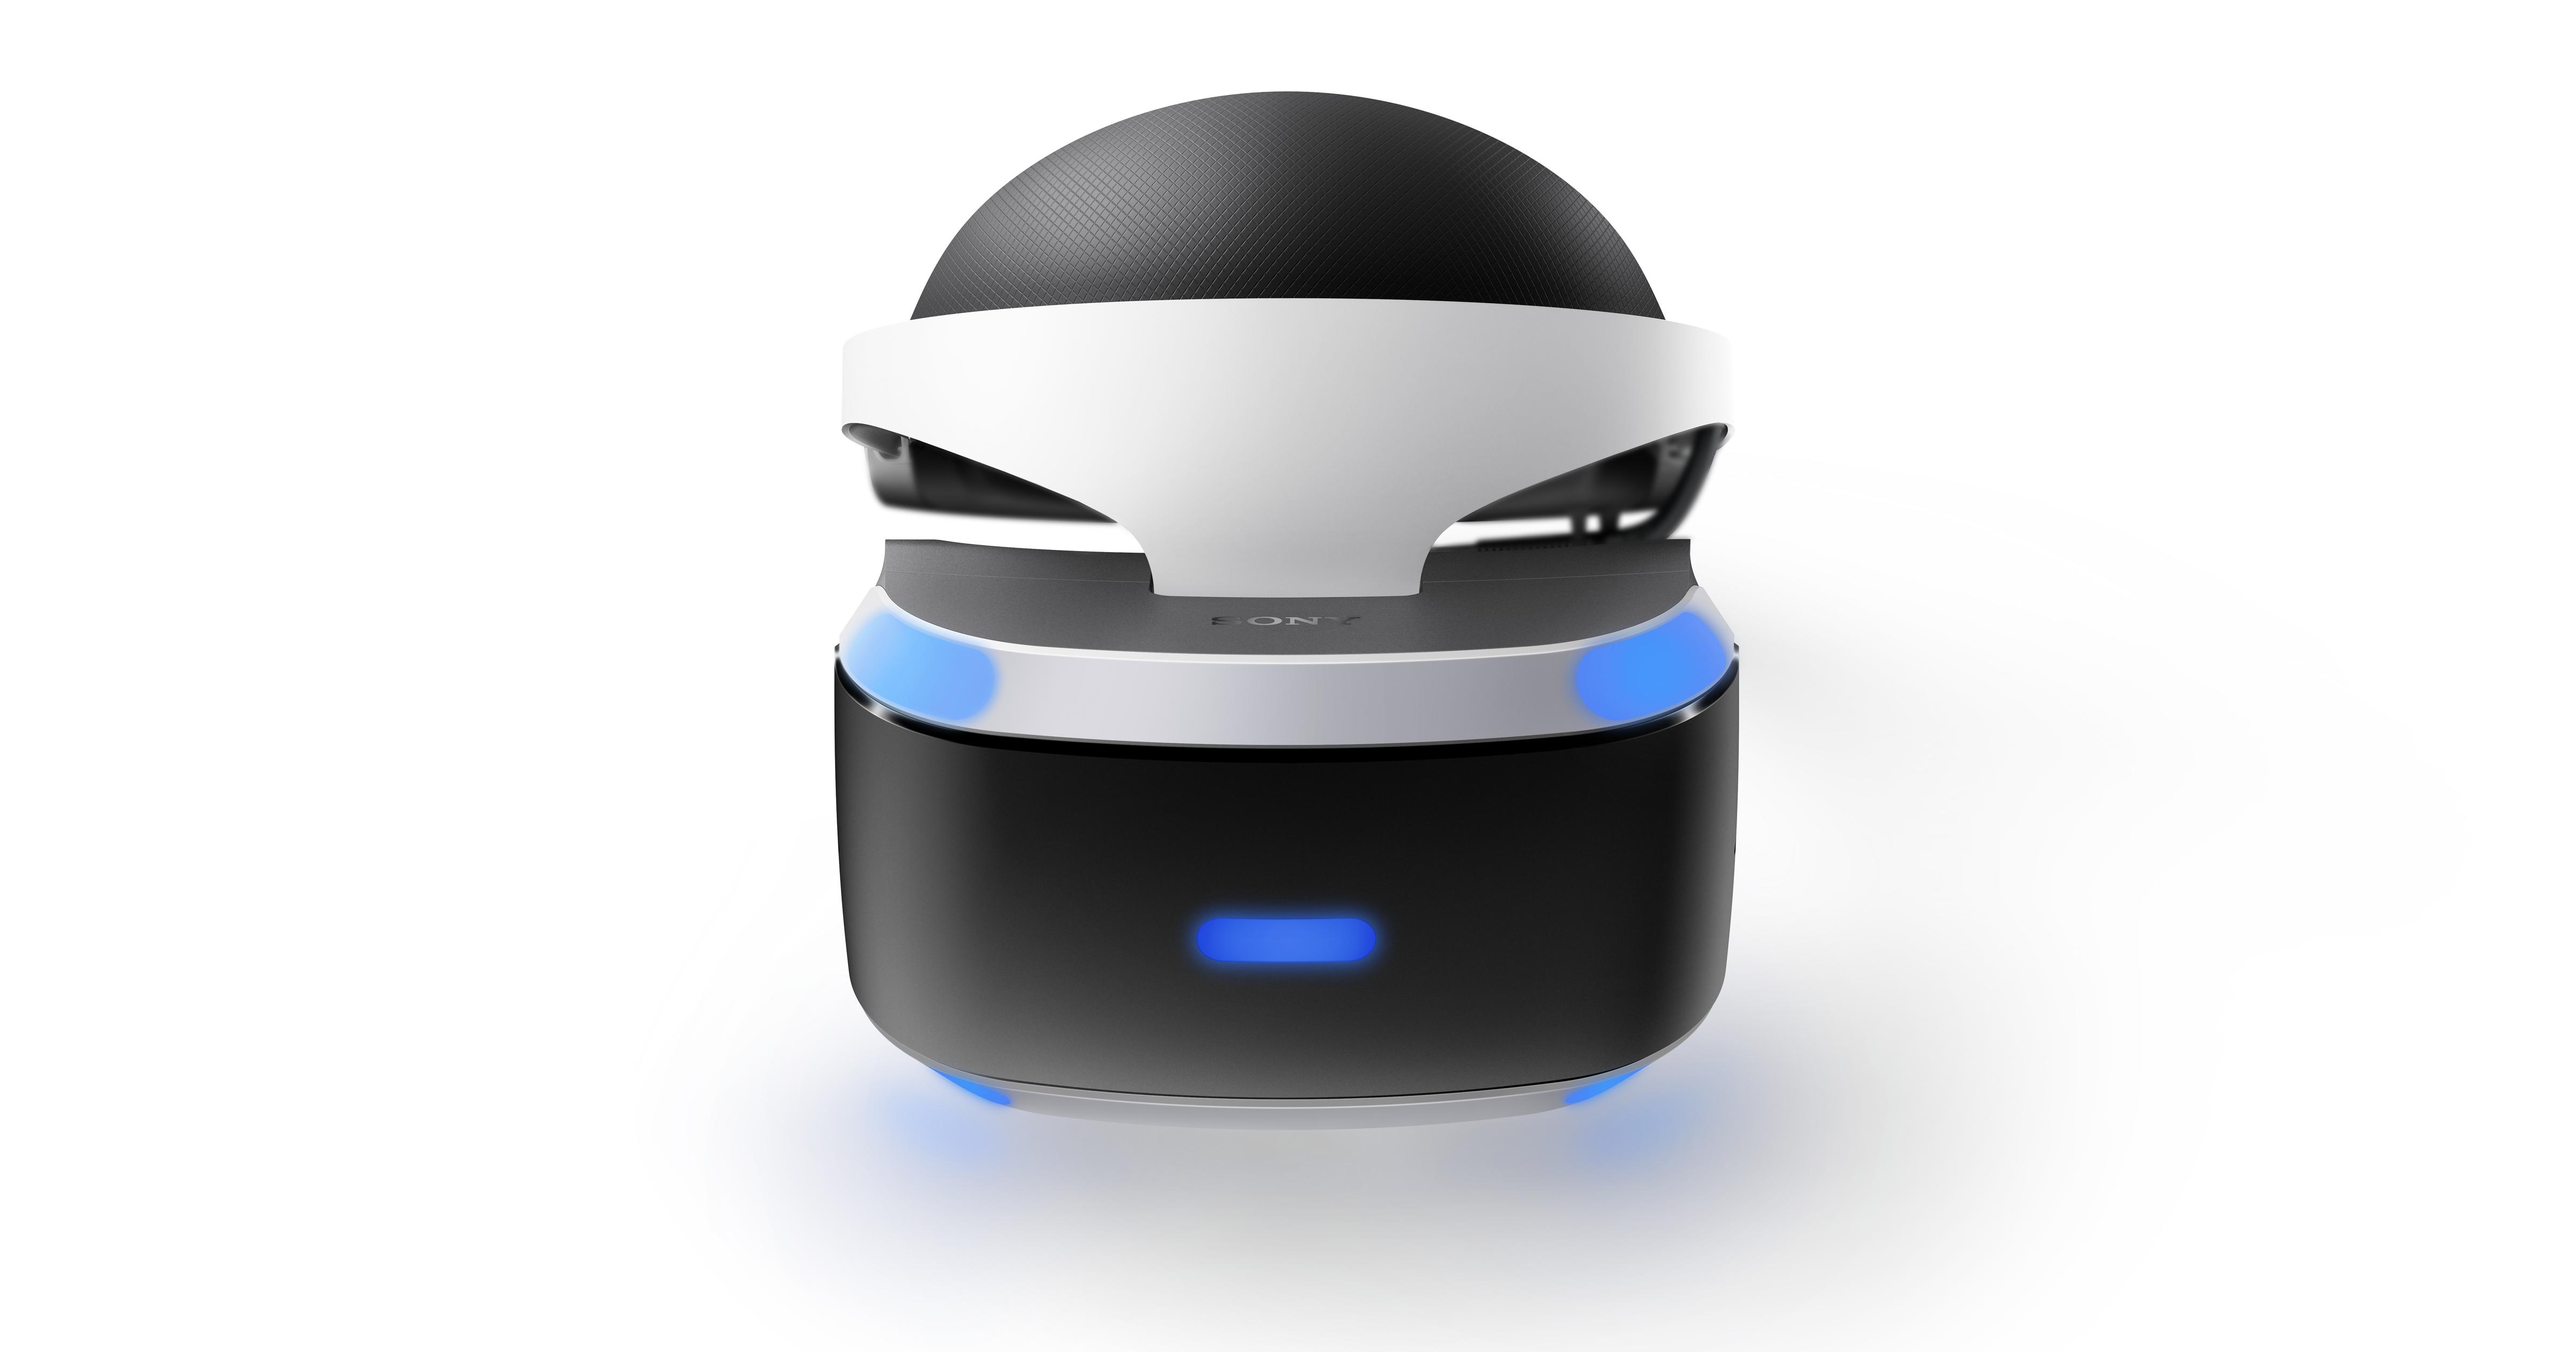 Reparación posible sobras líder PlayStation VR: la guía de preguntas frecuentes definitiva (Actualizado) –  PlayStation.Blog en español